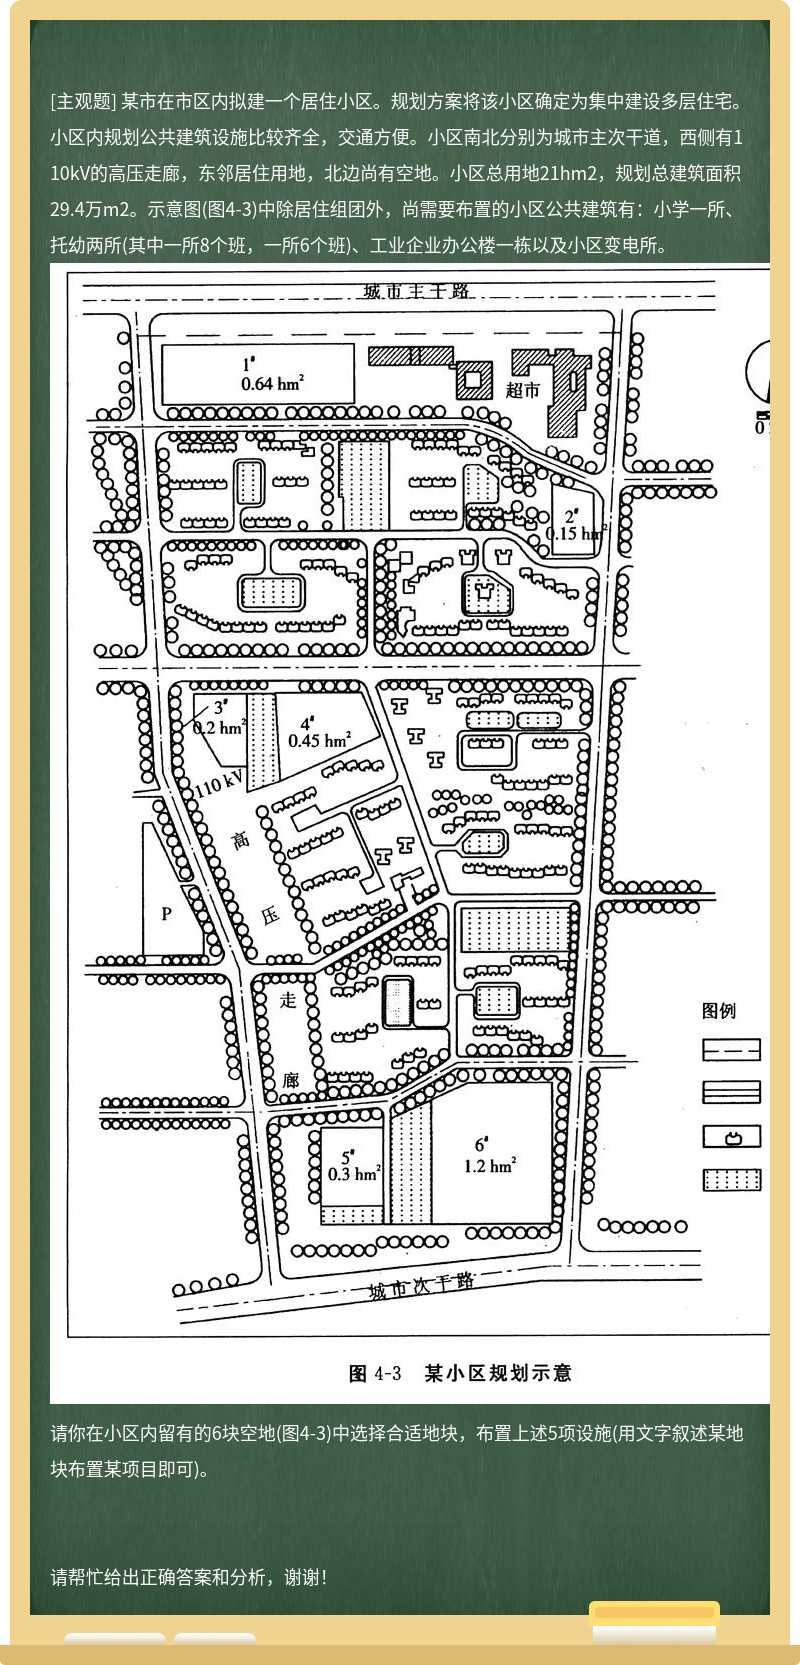 某市在市区内拟建一个居住小区。规划方案将该小区确定为集中建设多层住宅。小区内规划公共建筑设施